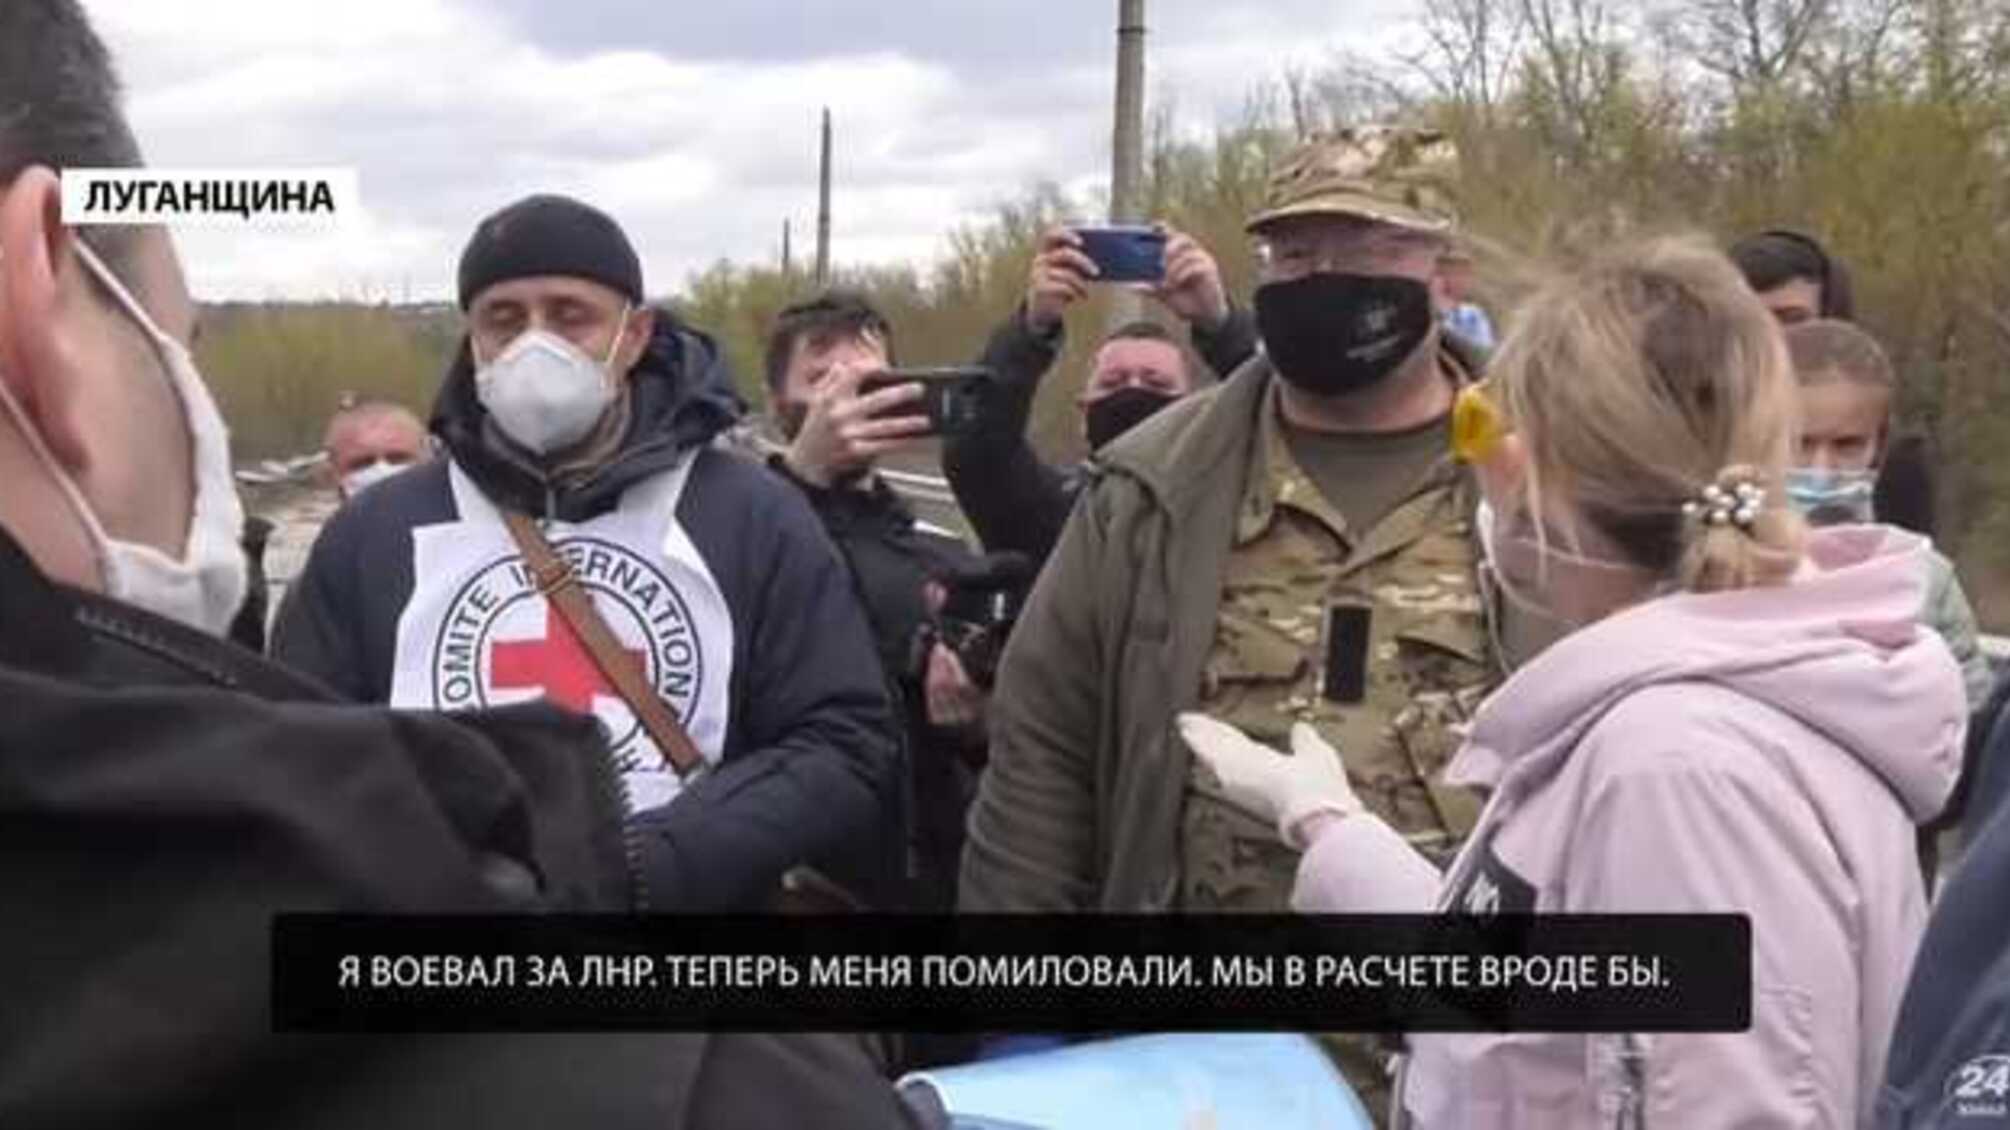 Обмен пленными: Четверо боевиков отказались возвращаться в «ЛНР»